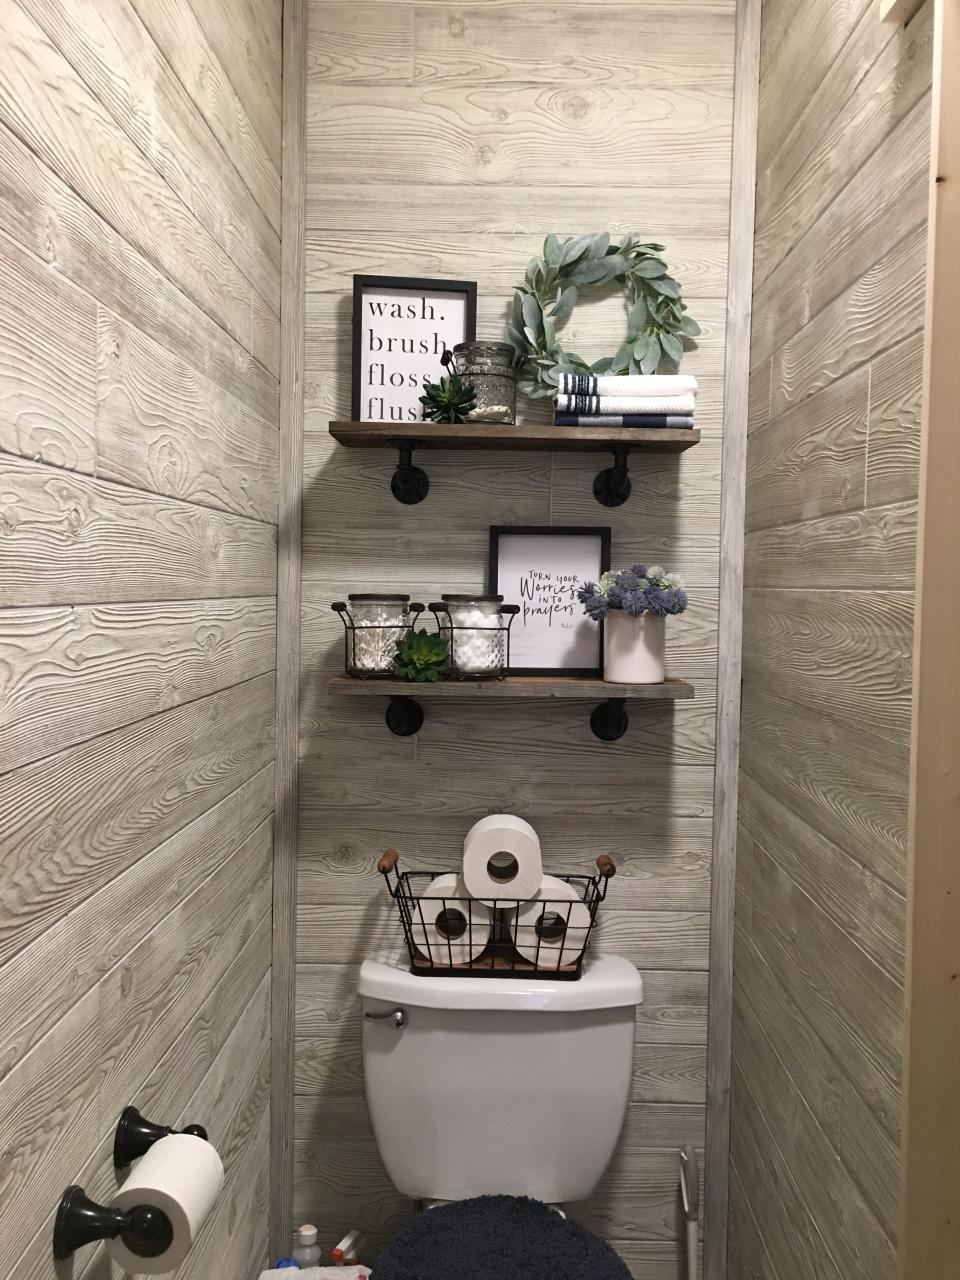 Bathroom shelf decor Bathroom shelf decor, Shelf decor, Bathroom shelves